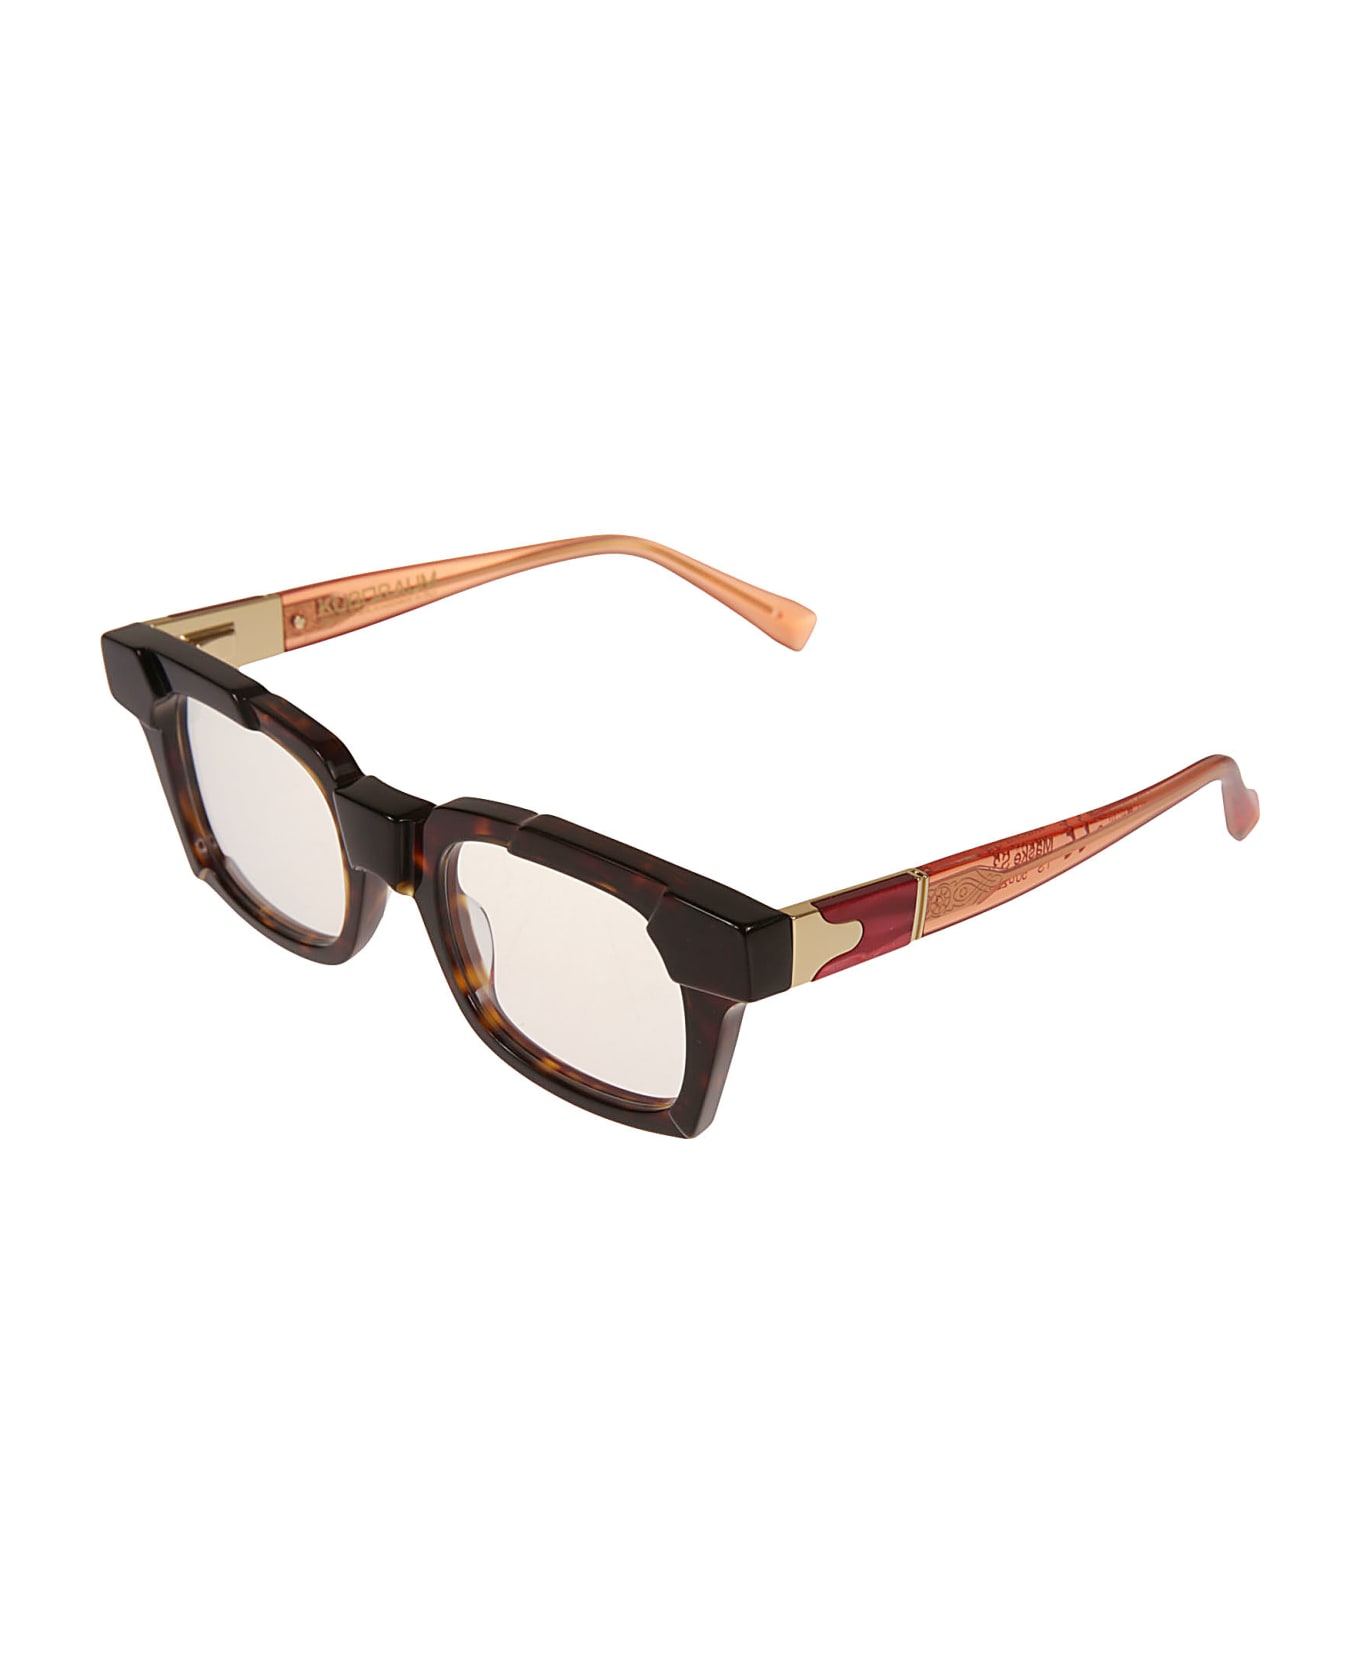 Kuboraum S3 Glasses - Brown アイウェア